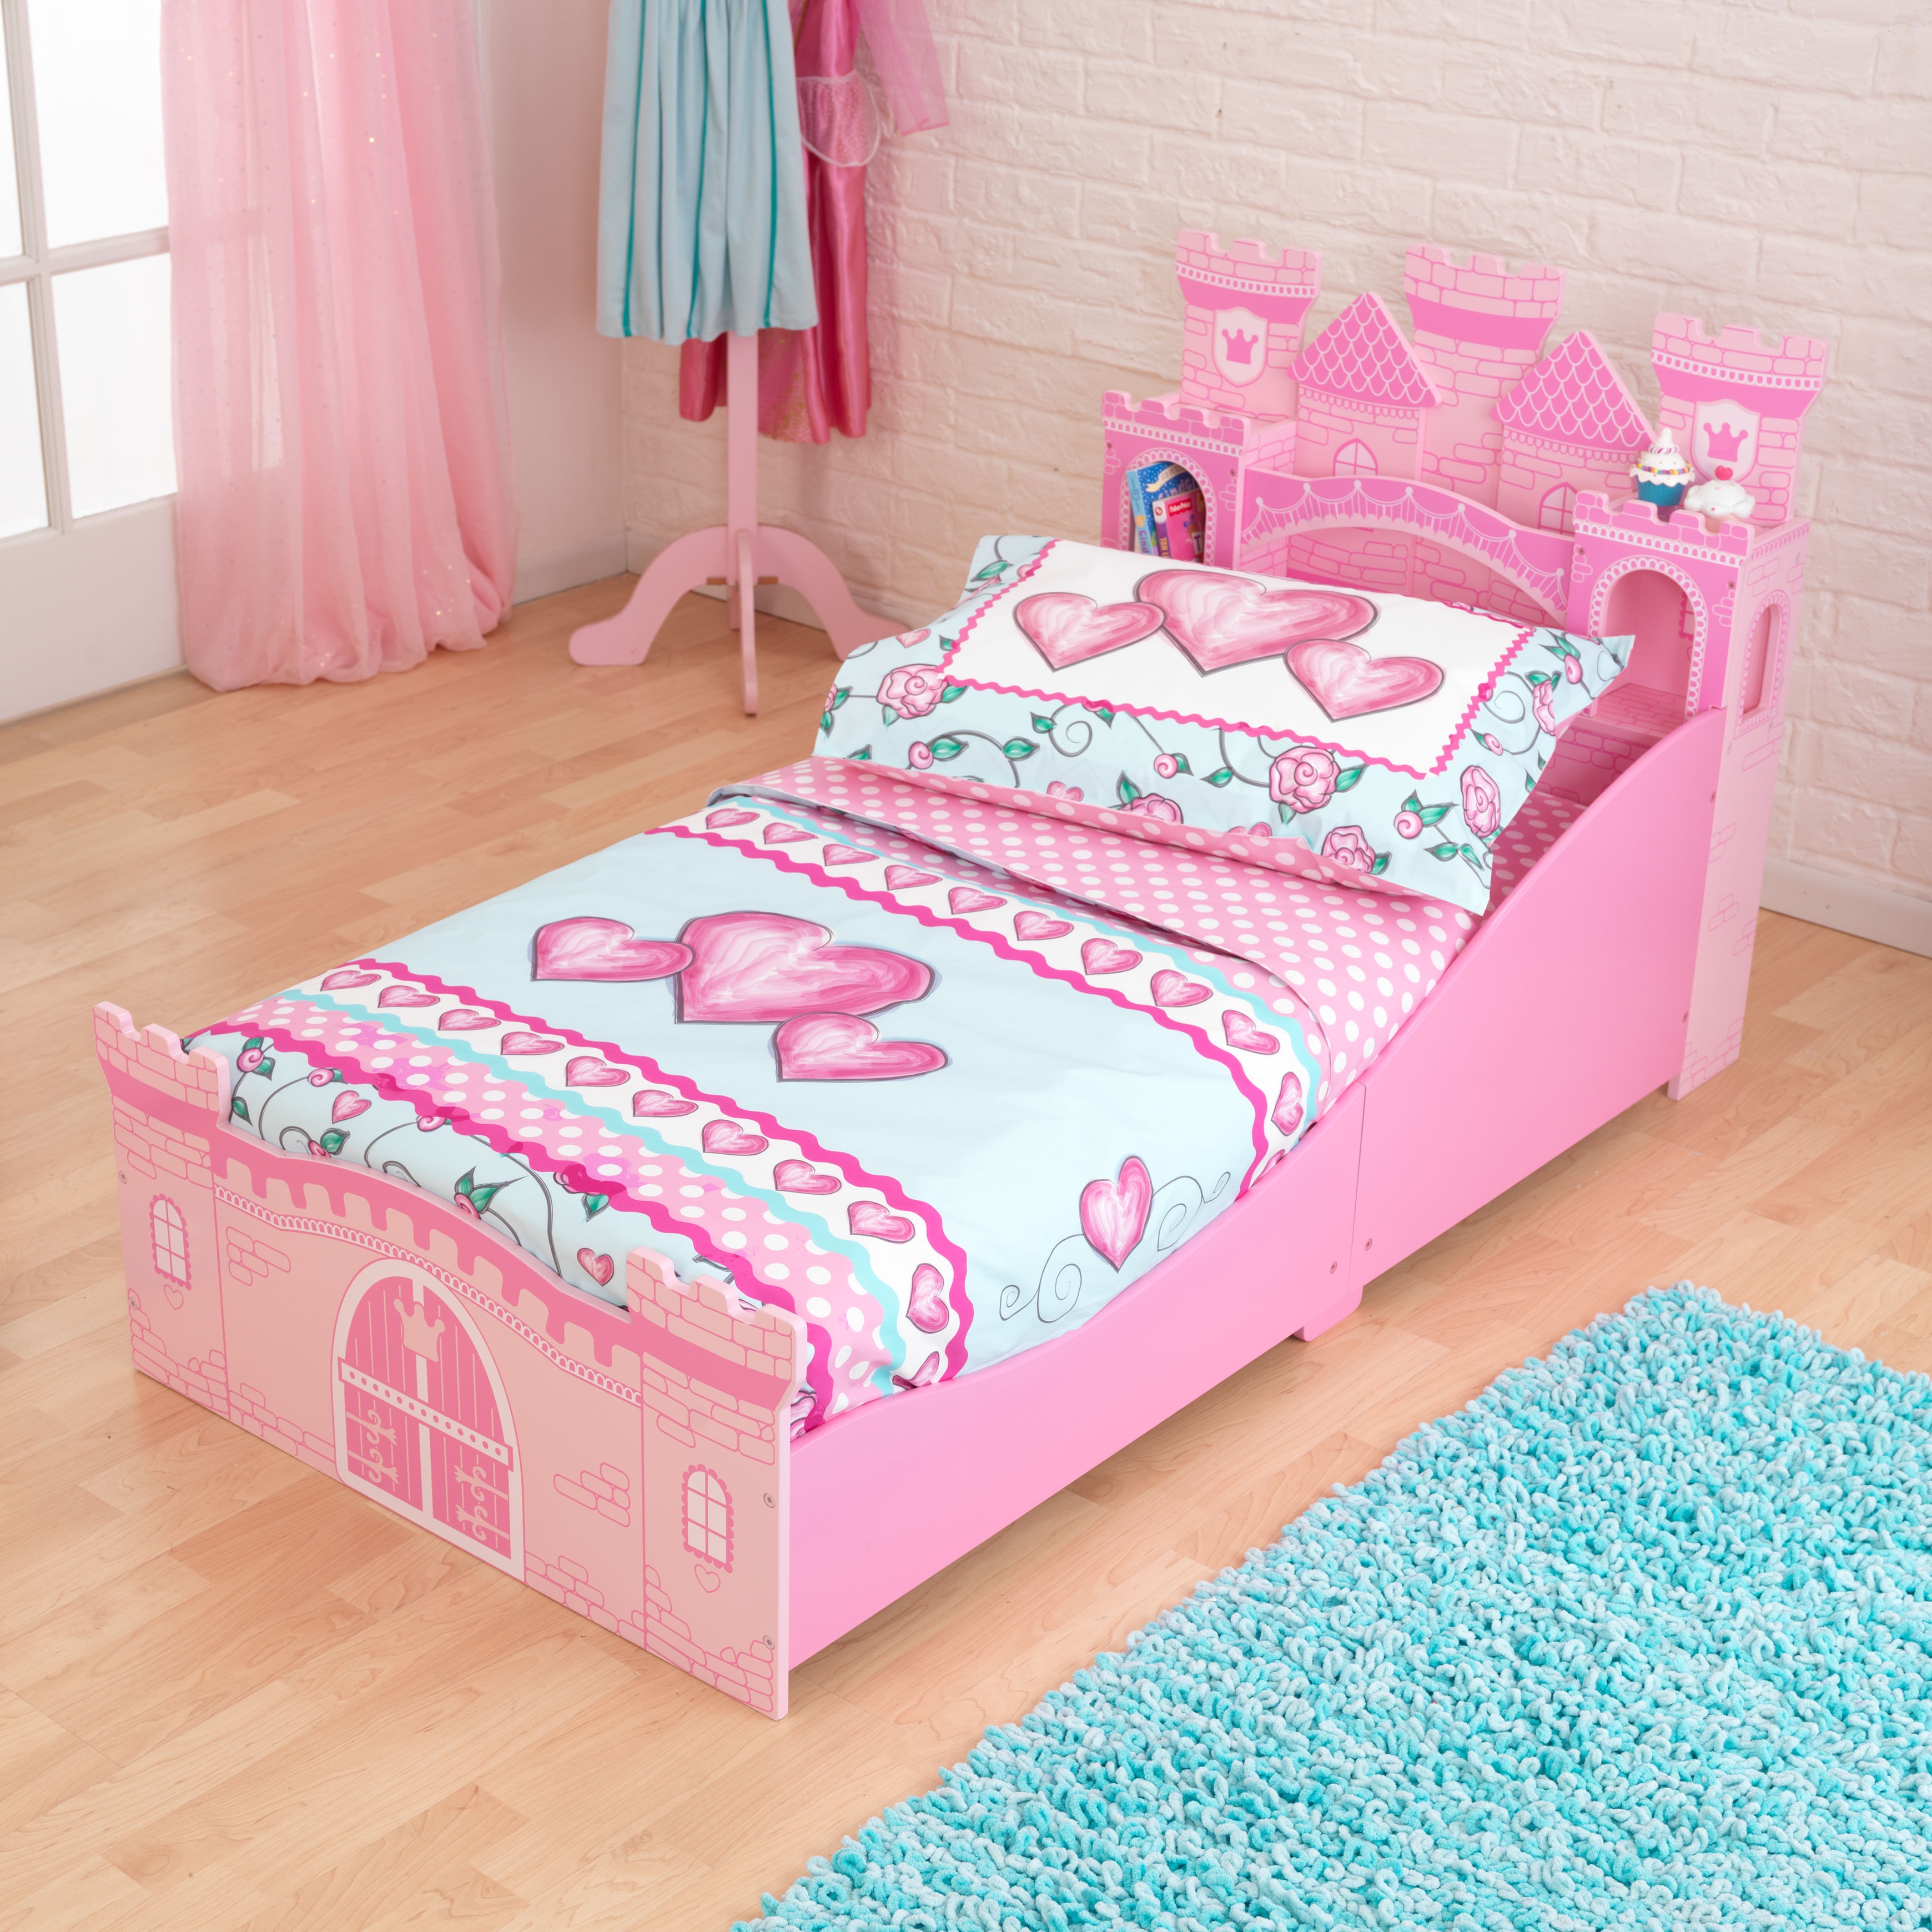 castle bed for little girl